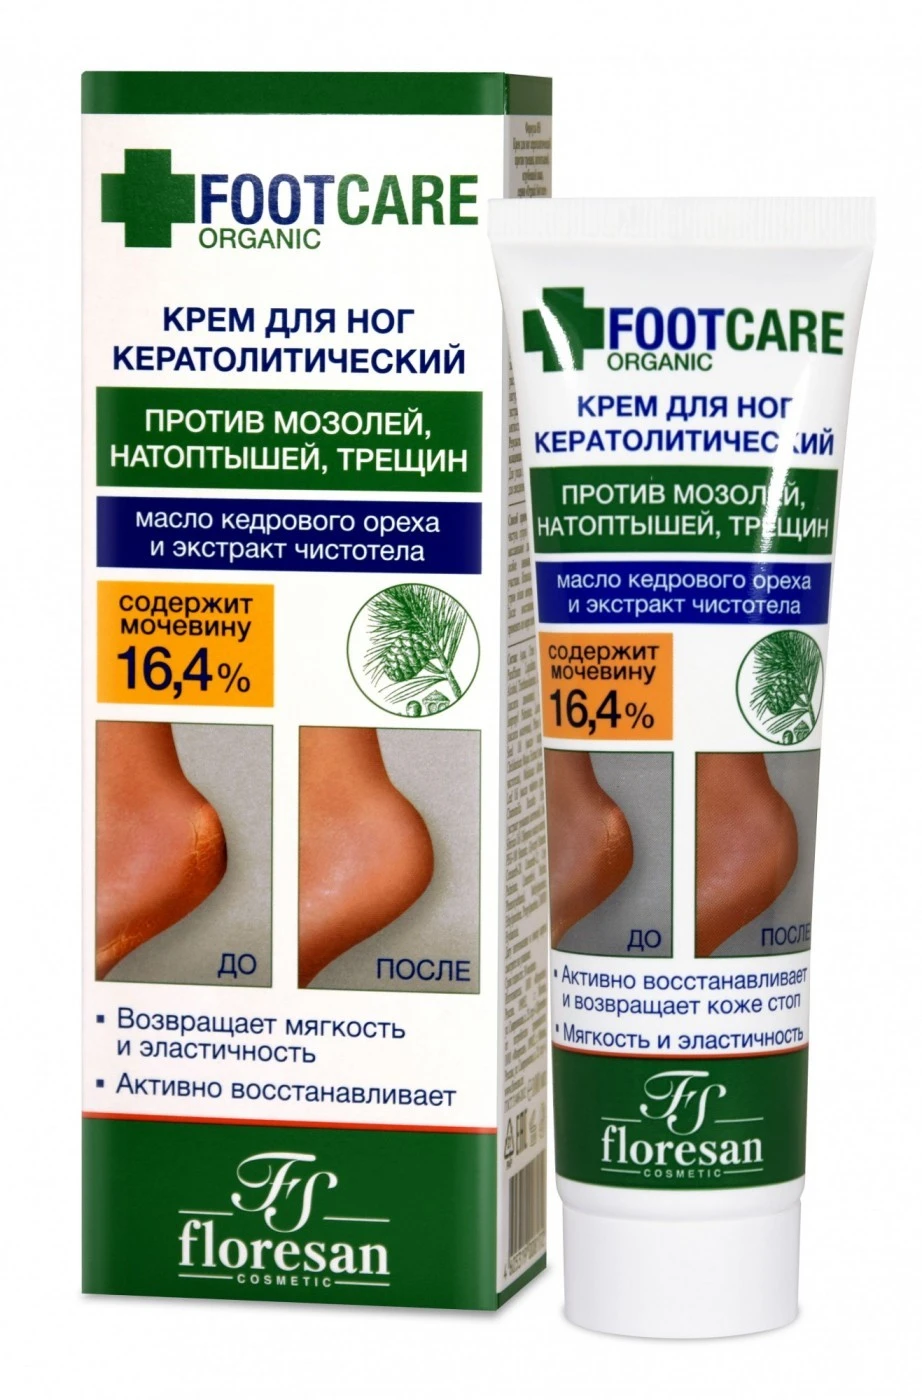 Floresan Organic FOOT CARE, арт.Ф-458 КРЕМ для ног КЕРАТОЛИТИЧЕСКИЙ против